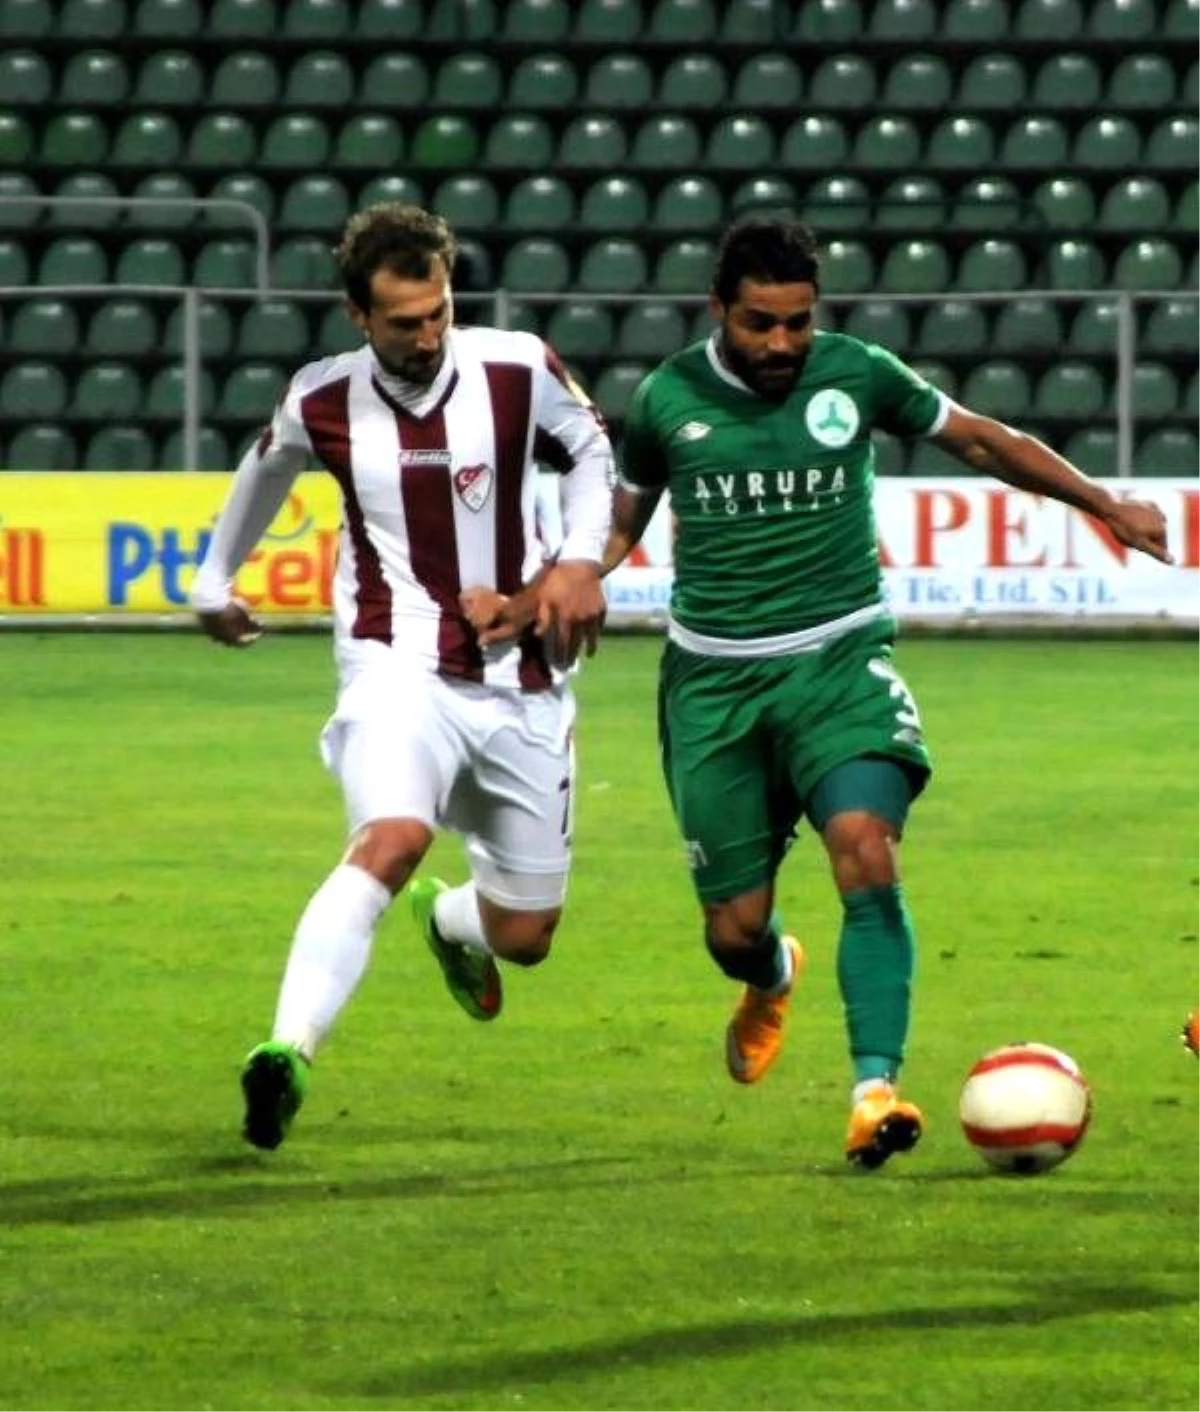 Giresunspor-Elazığspor: 1-1